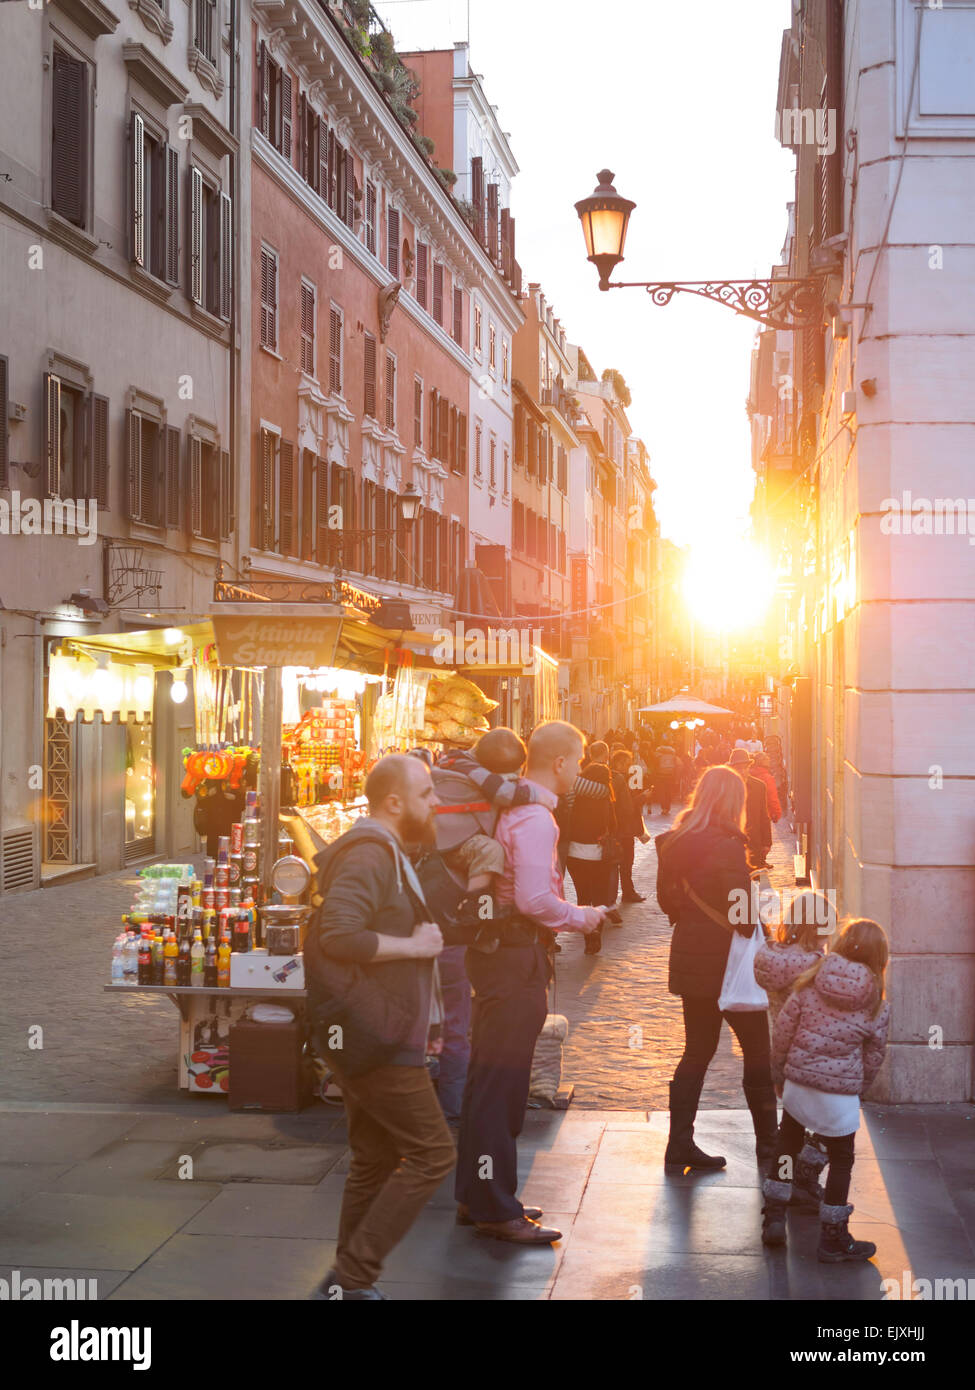 Italy, Rome, People at Via Frattina Stock Photo